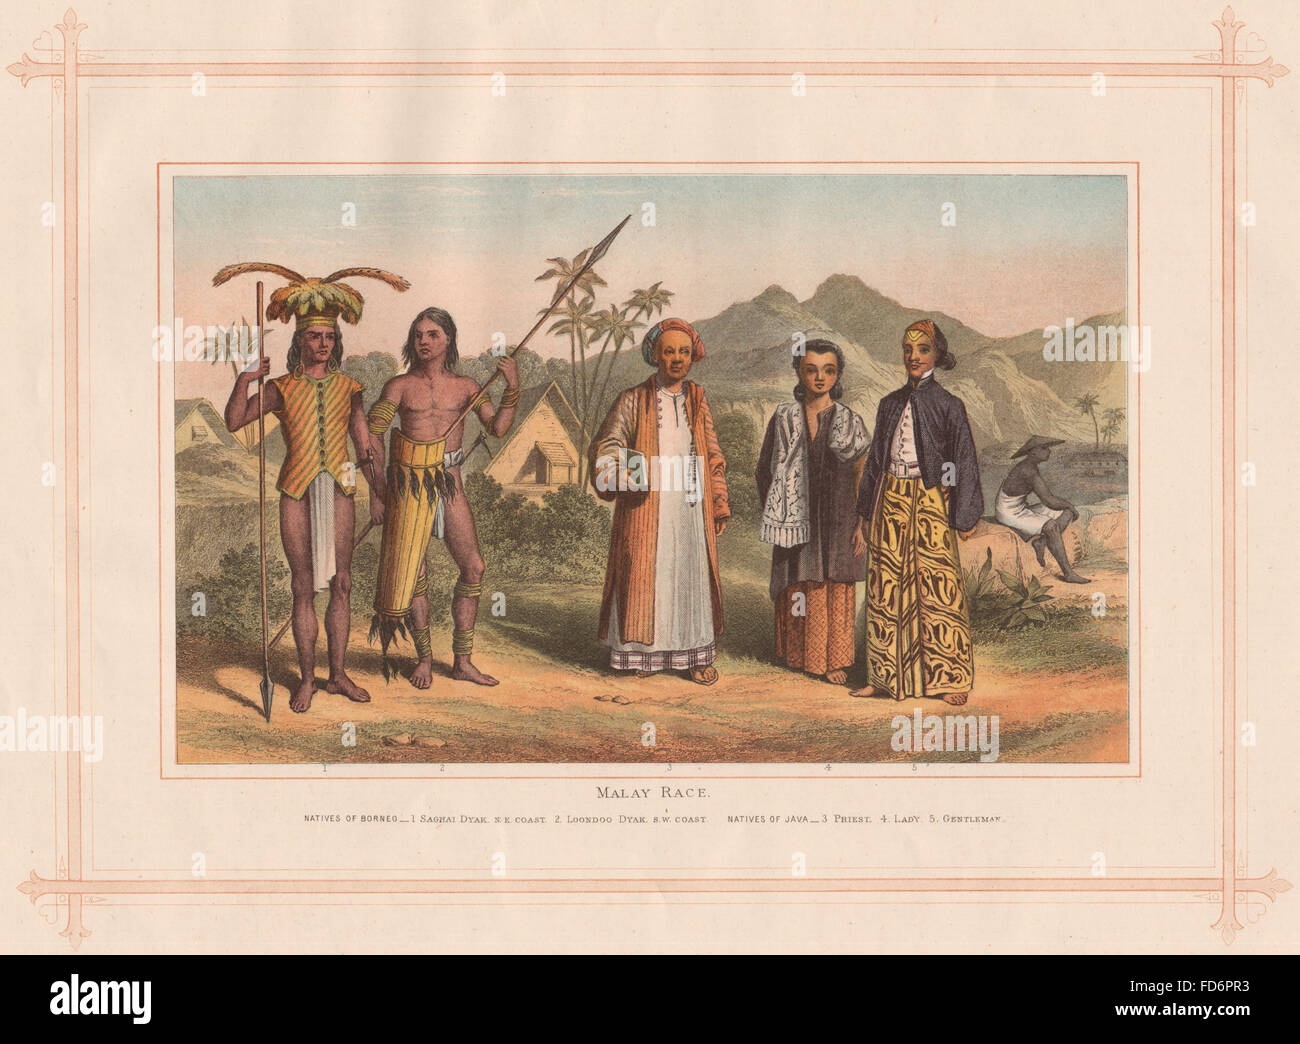 MALAIISCHE Rennen: Borneo Saghai & Loondoo Dyaks. Java Priester Lady Gentleman, 1882 Stockfoto